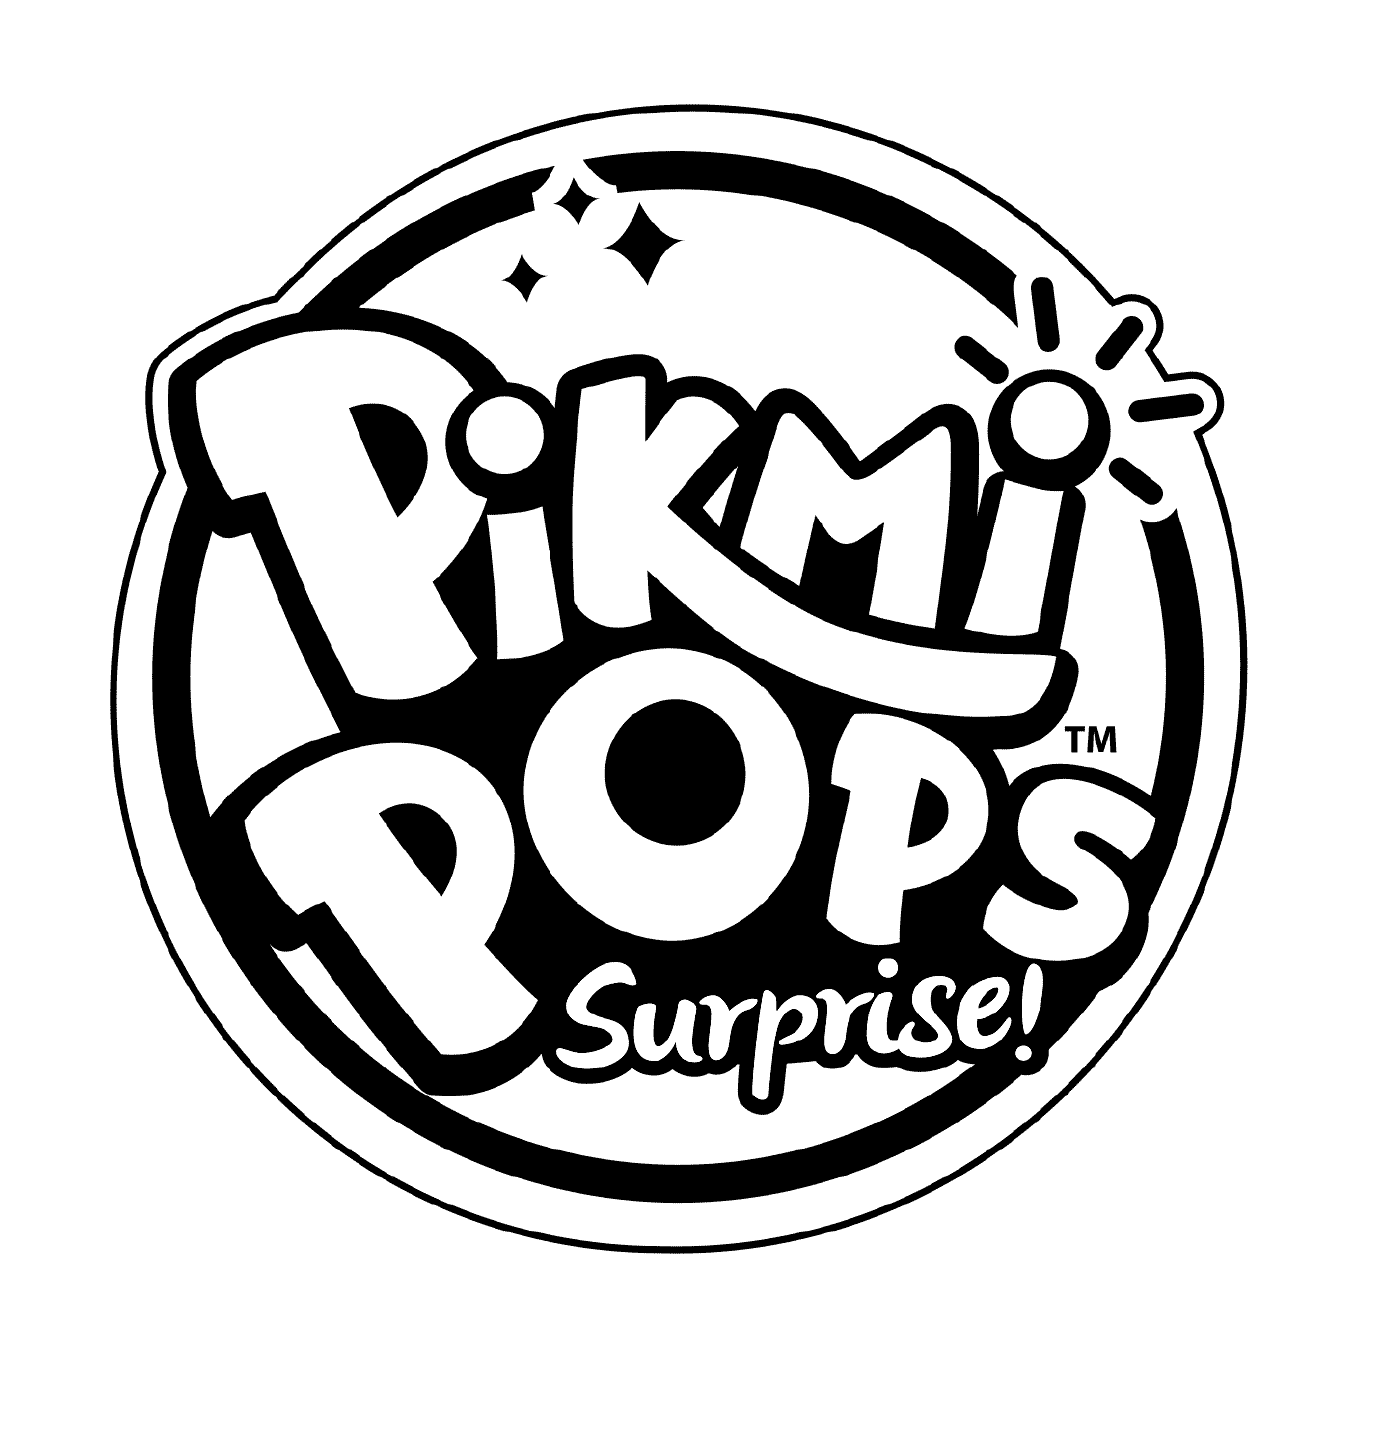  Colorazione del logo Pikmi Pops 